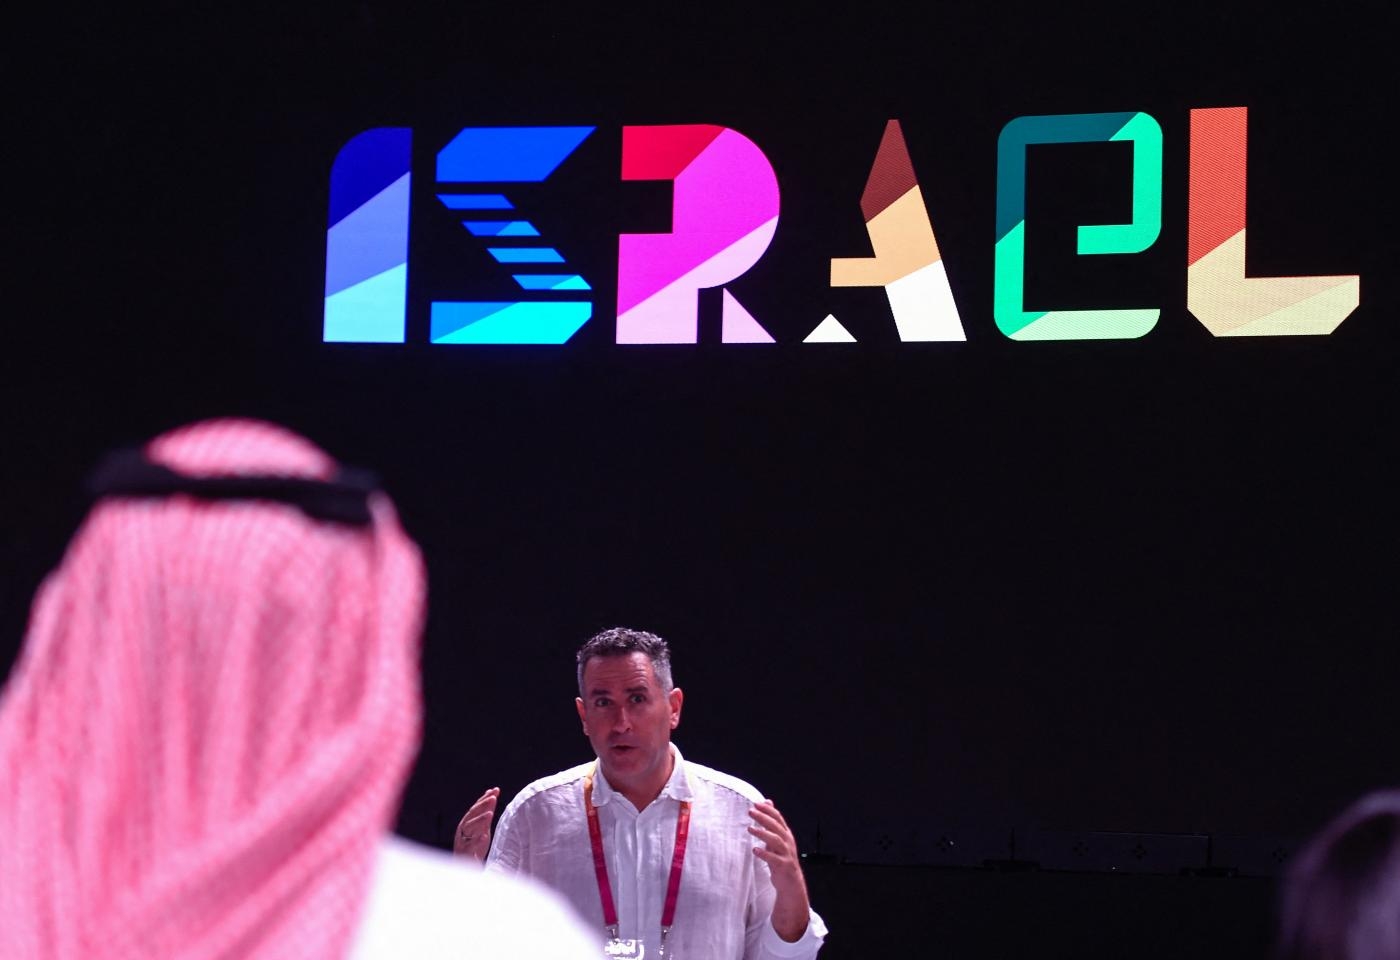 Le pavillon d’Israël à l’Expo 2020 à Dubaï, photographié le 27 septembre 2021 (AFP)